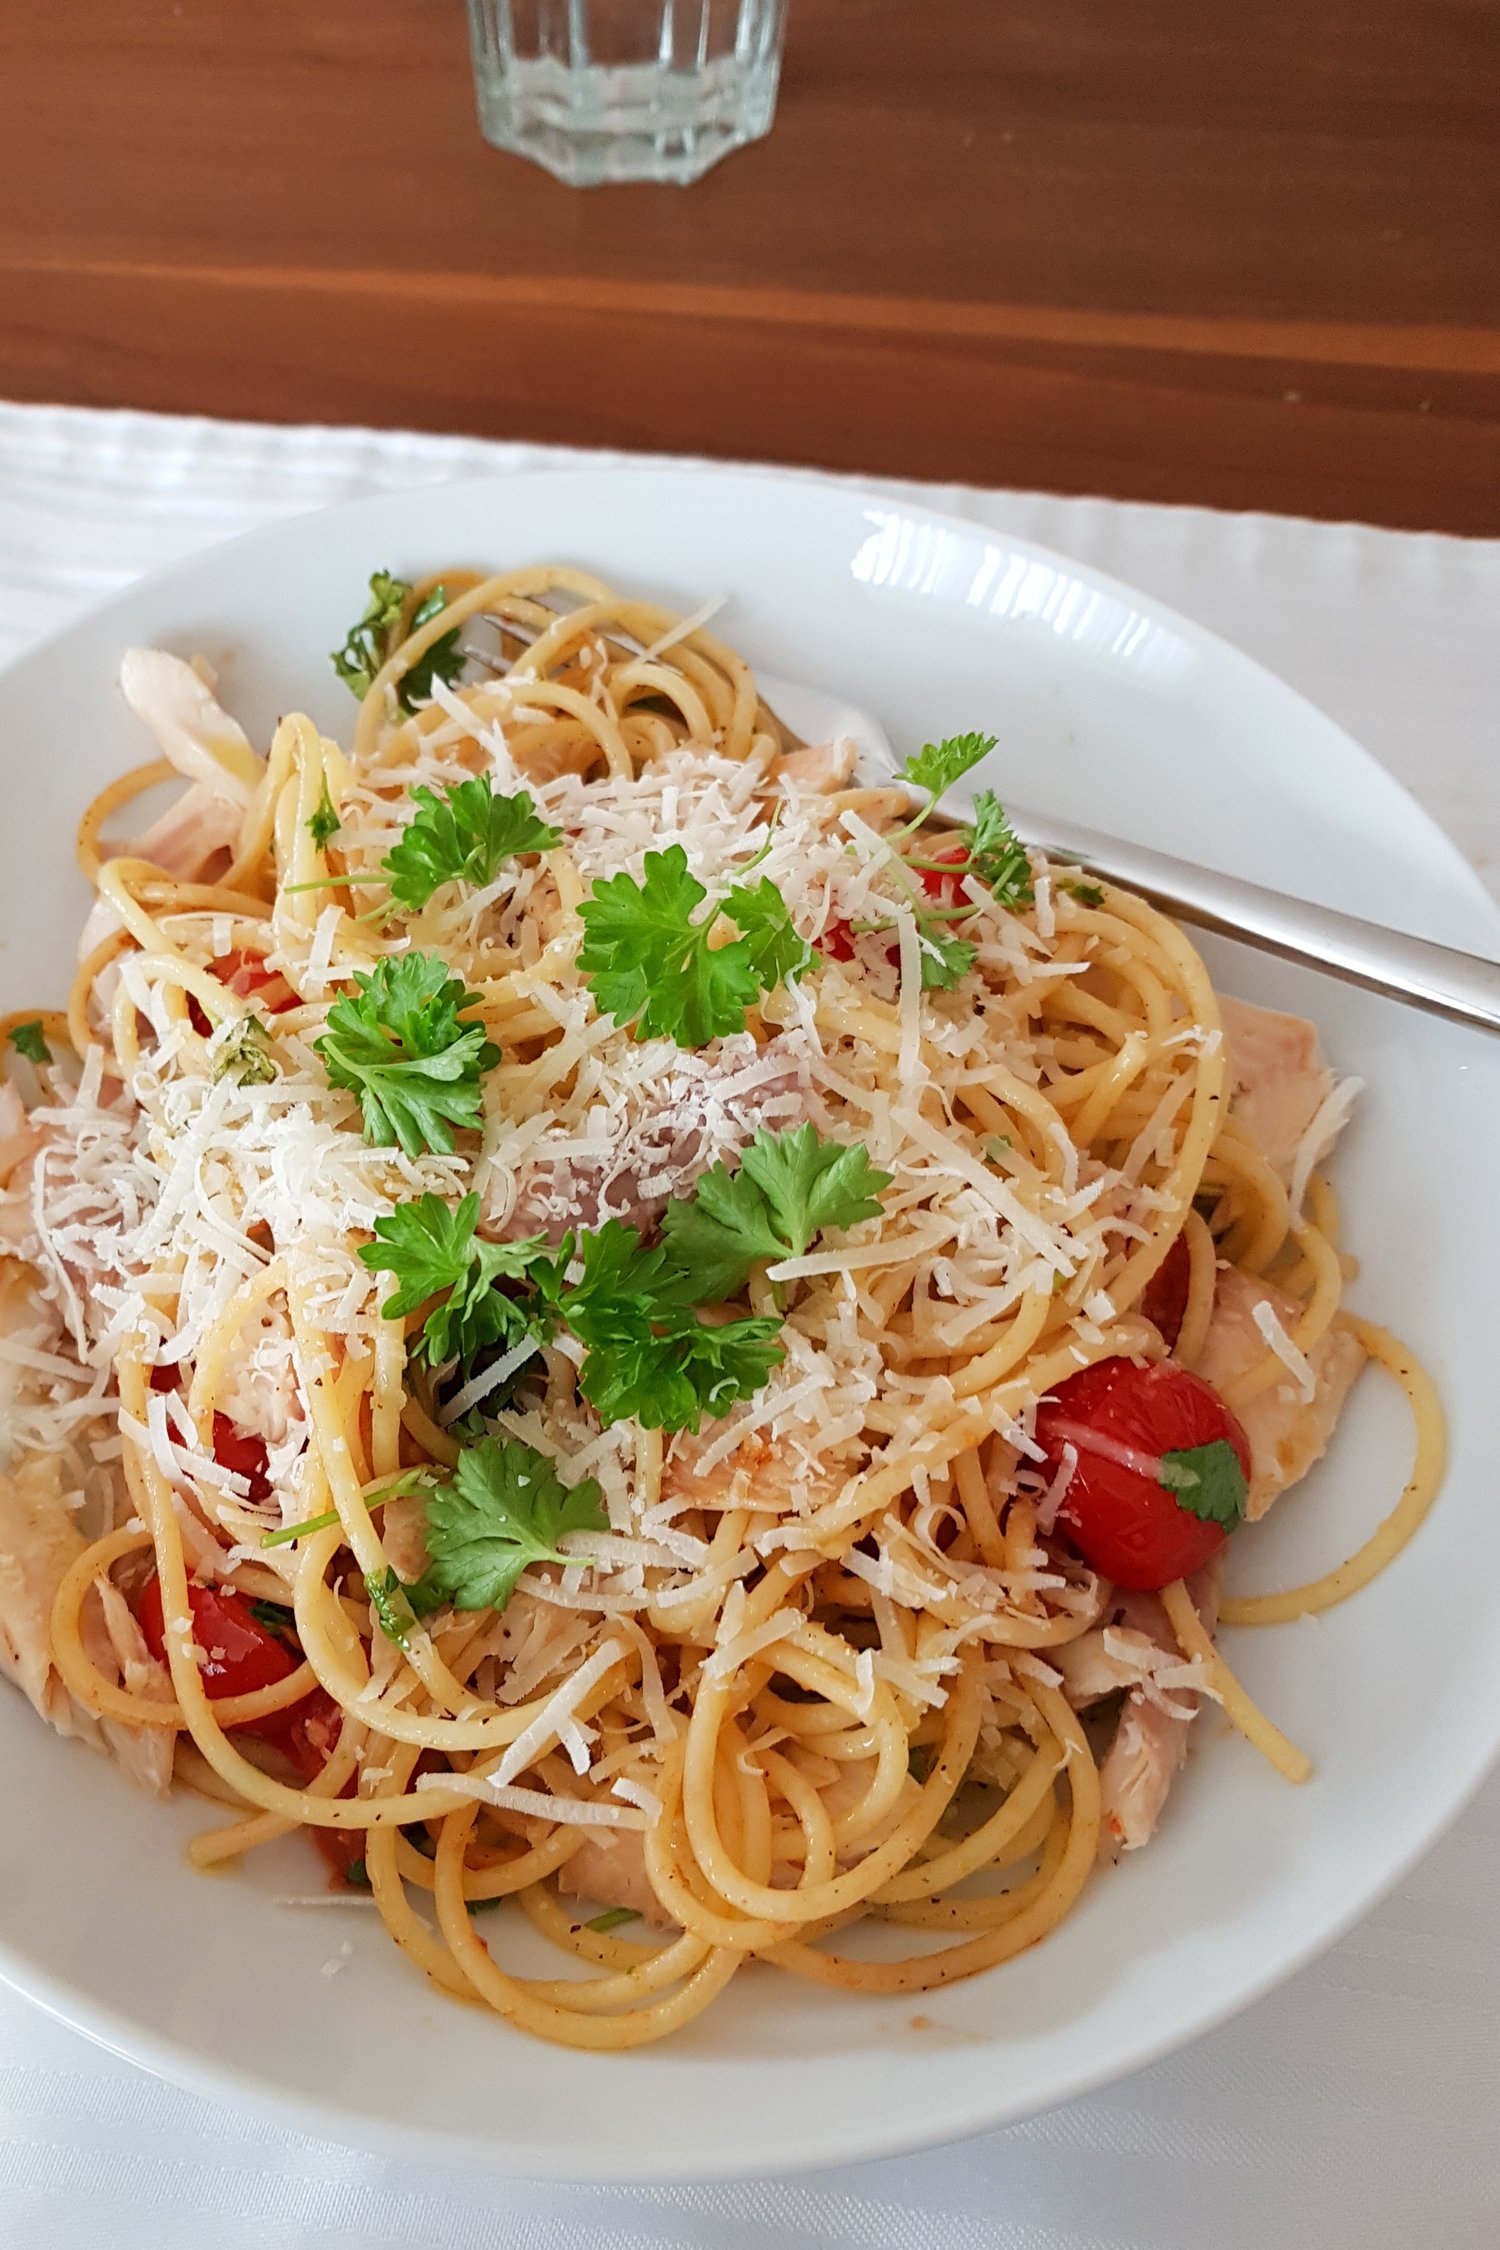 Spaghetti mit Tomaten und Räucherfisch — butter &amp; brösel